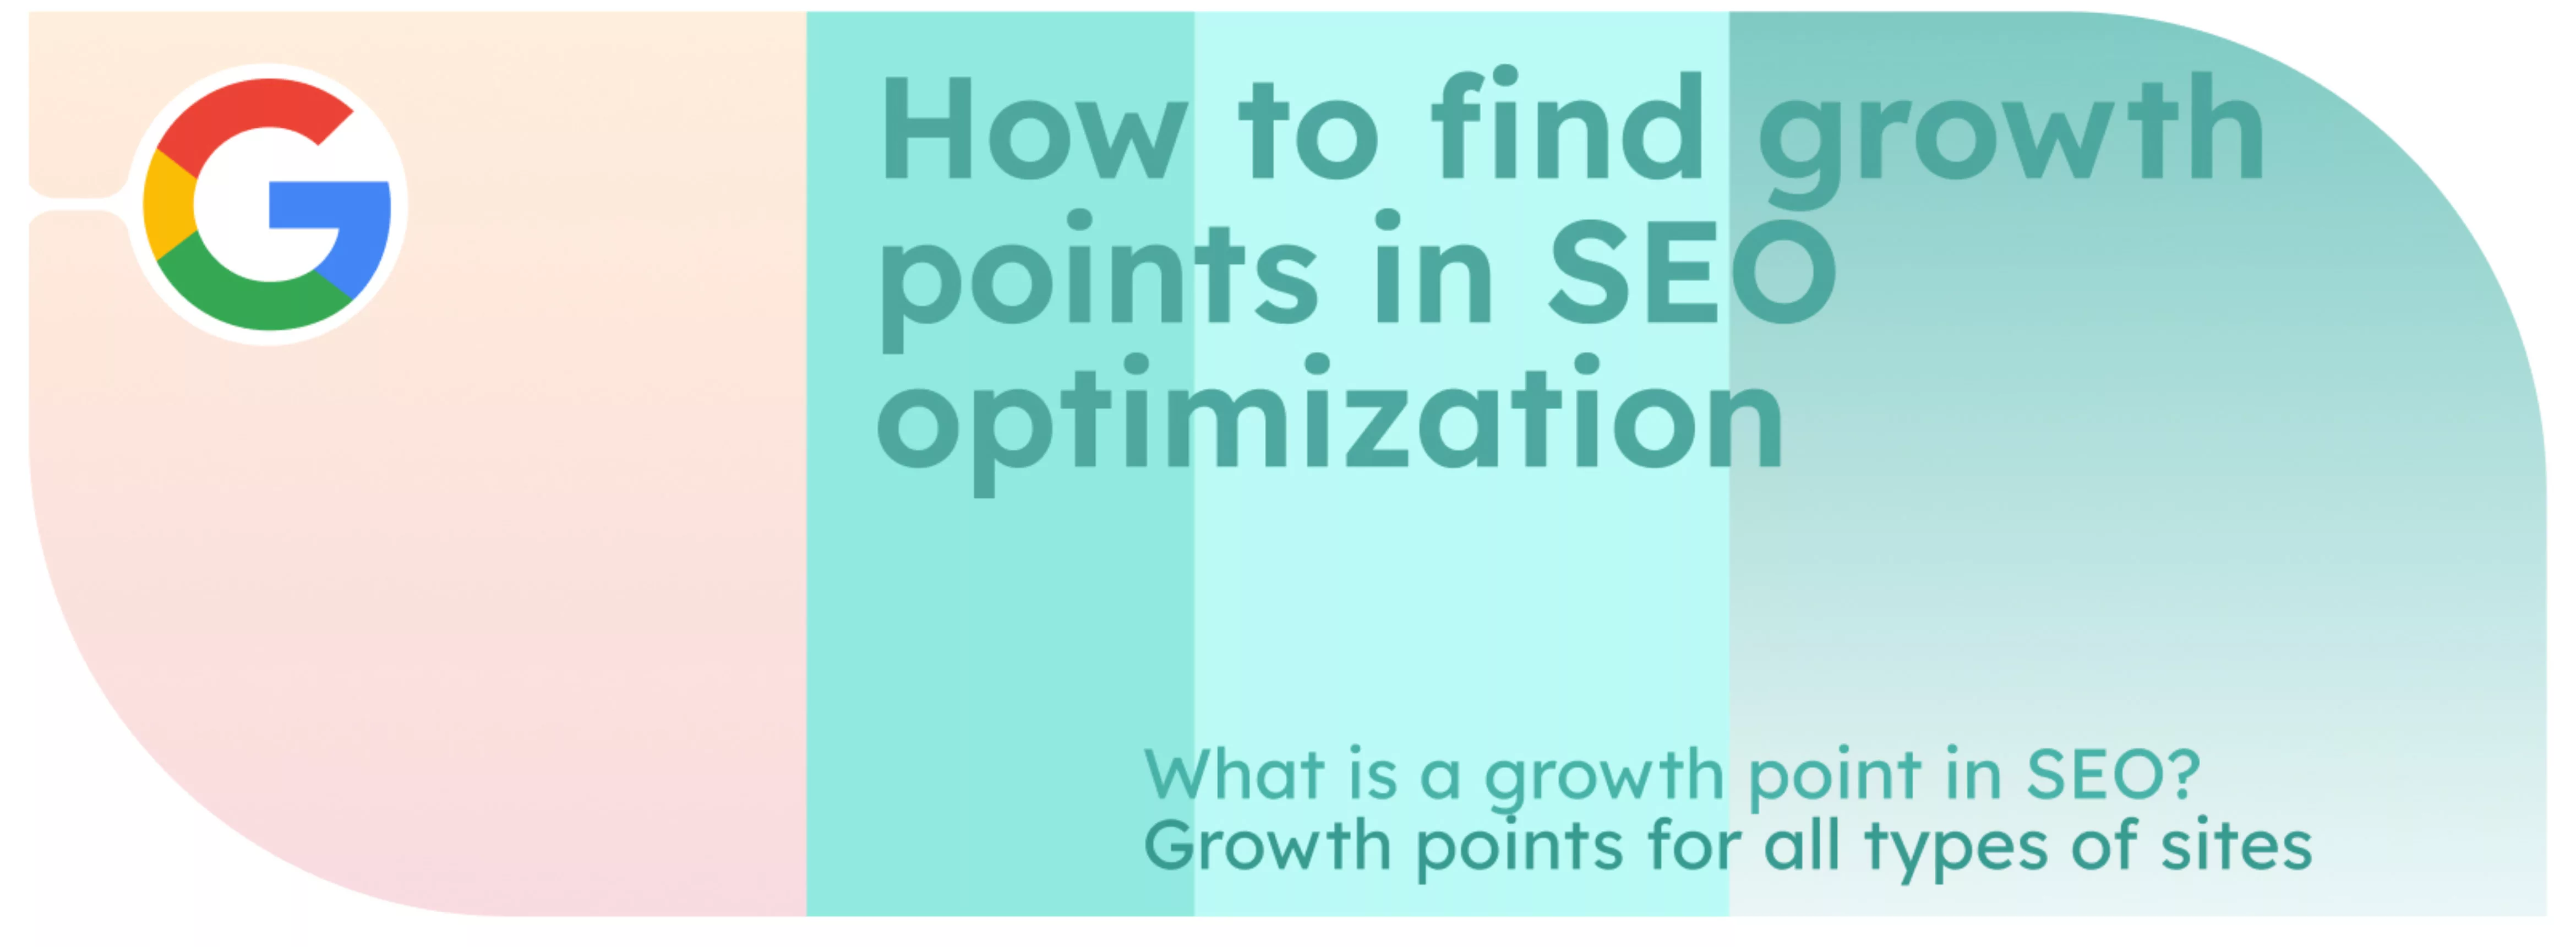 Comment trouver les points de croissance dans l’optimisation SEO